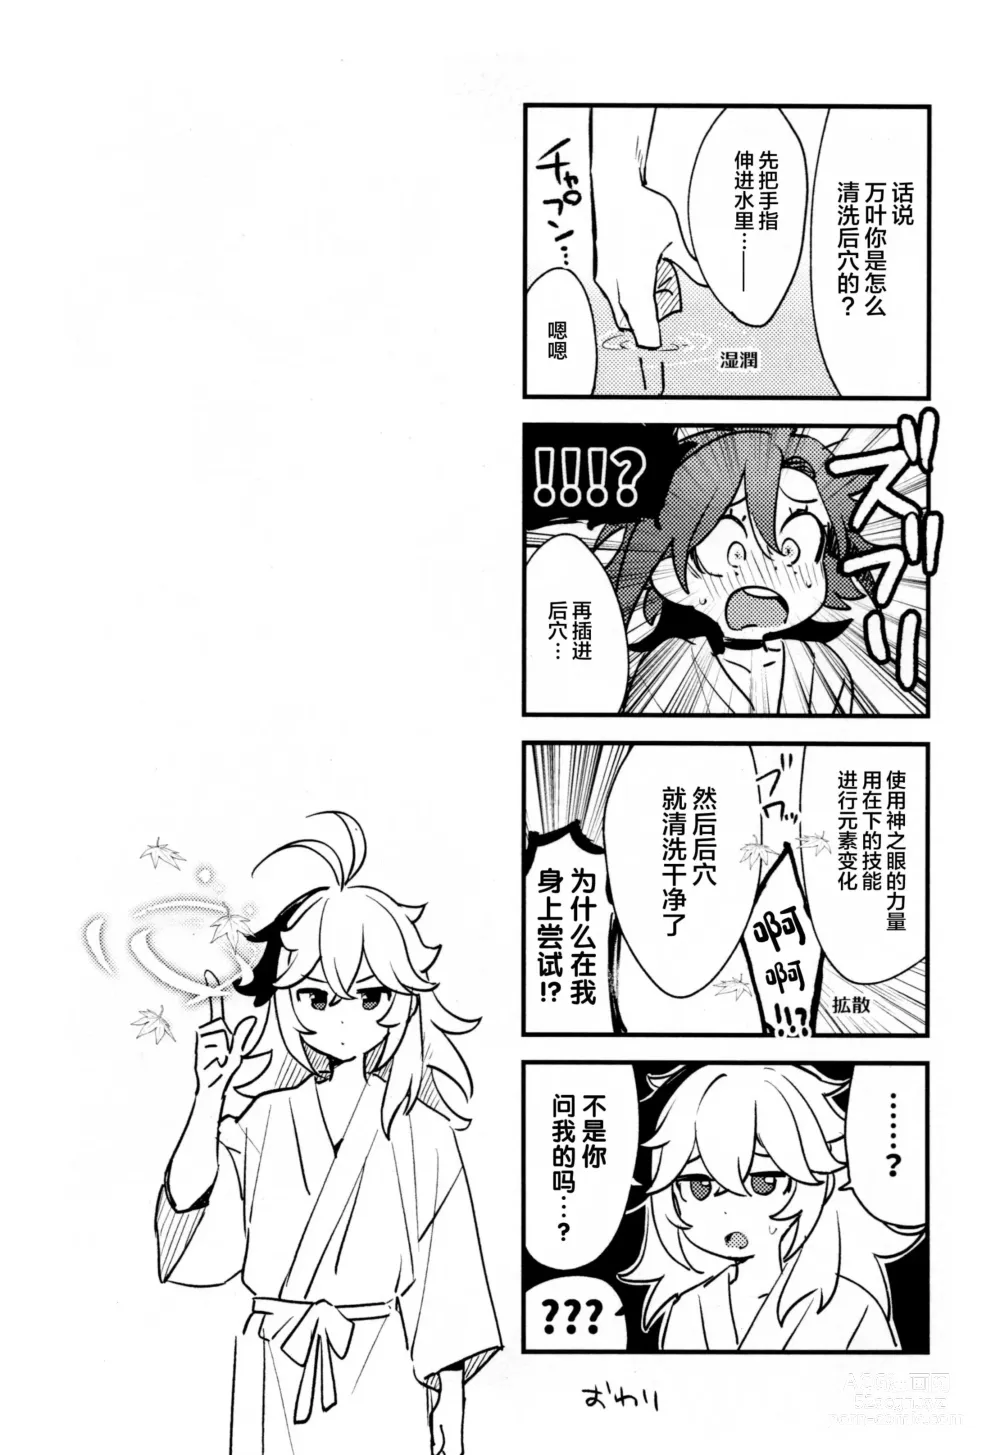 Page 67 of doujinshi Kaze Kyoumei Kando 2-bai